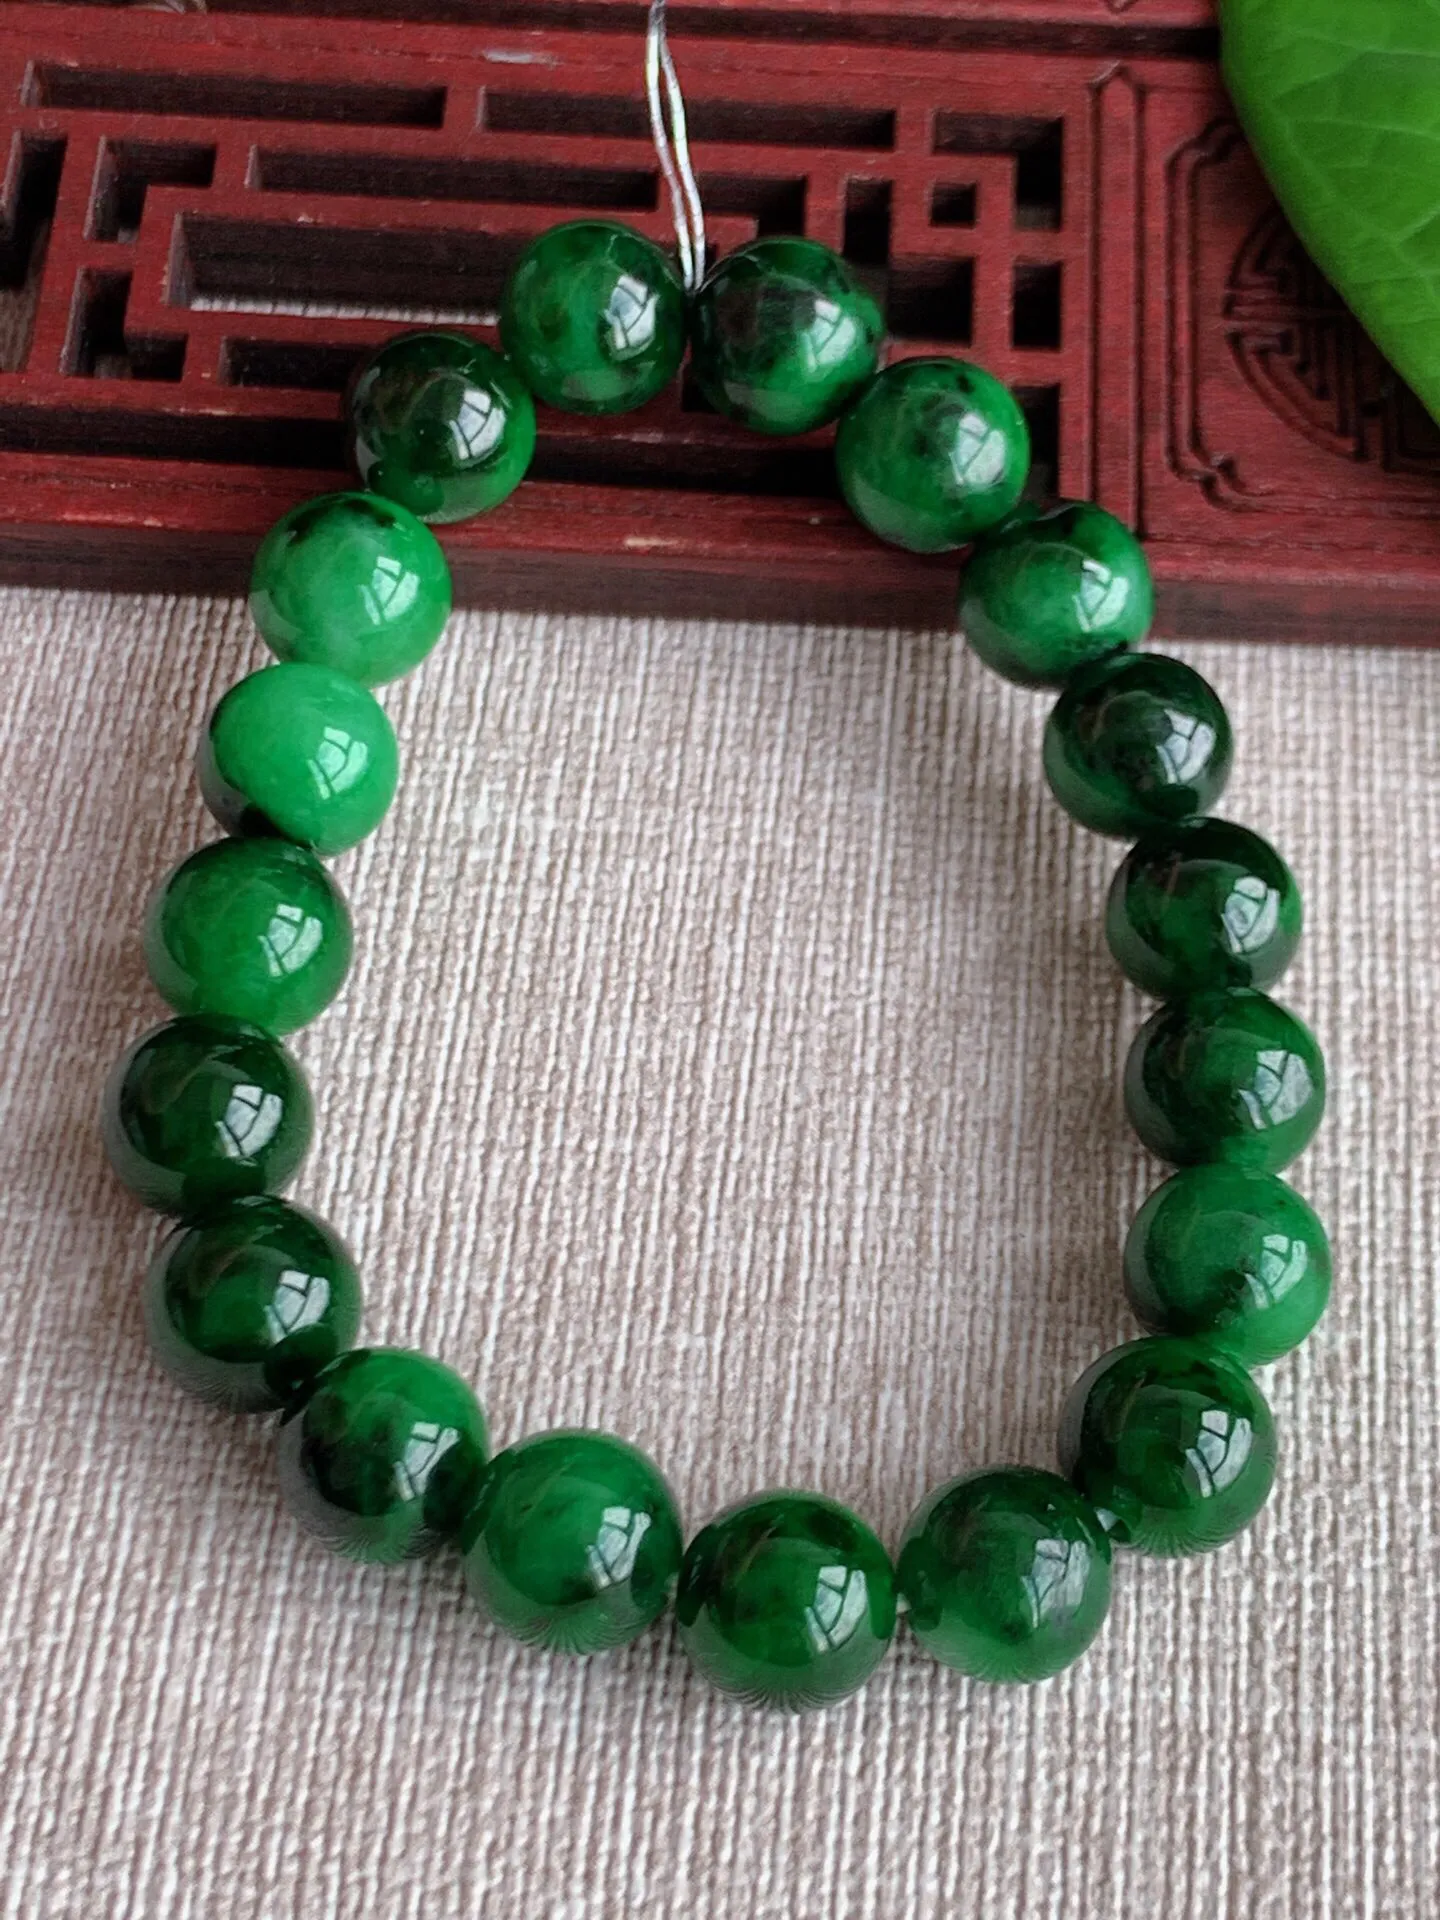 天然A货翡翠老坑种满绿辣绿圆珠佛珠手串19颗 尺寸9mm